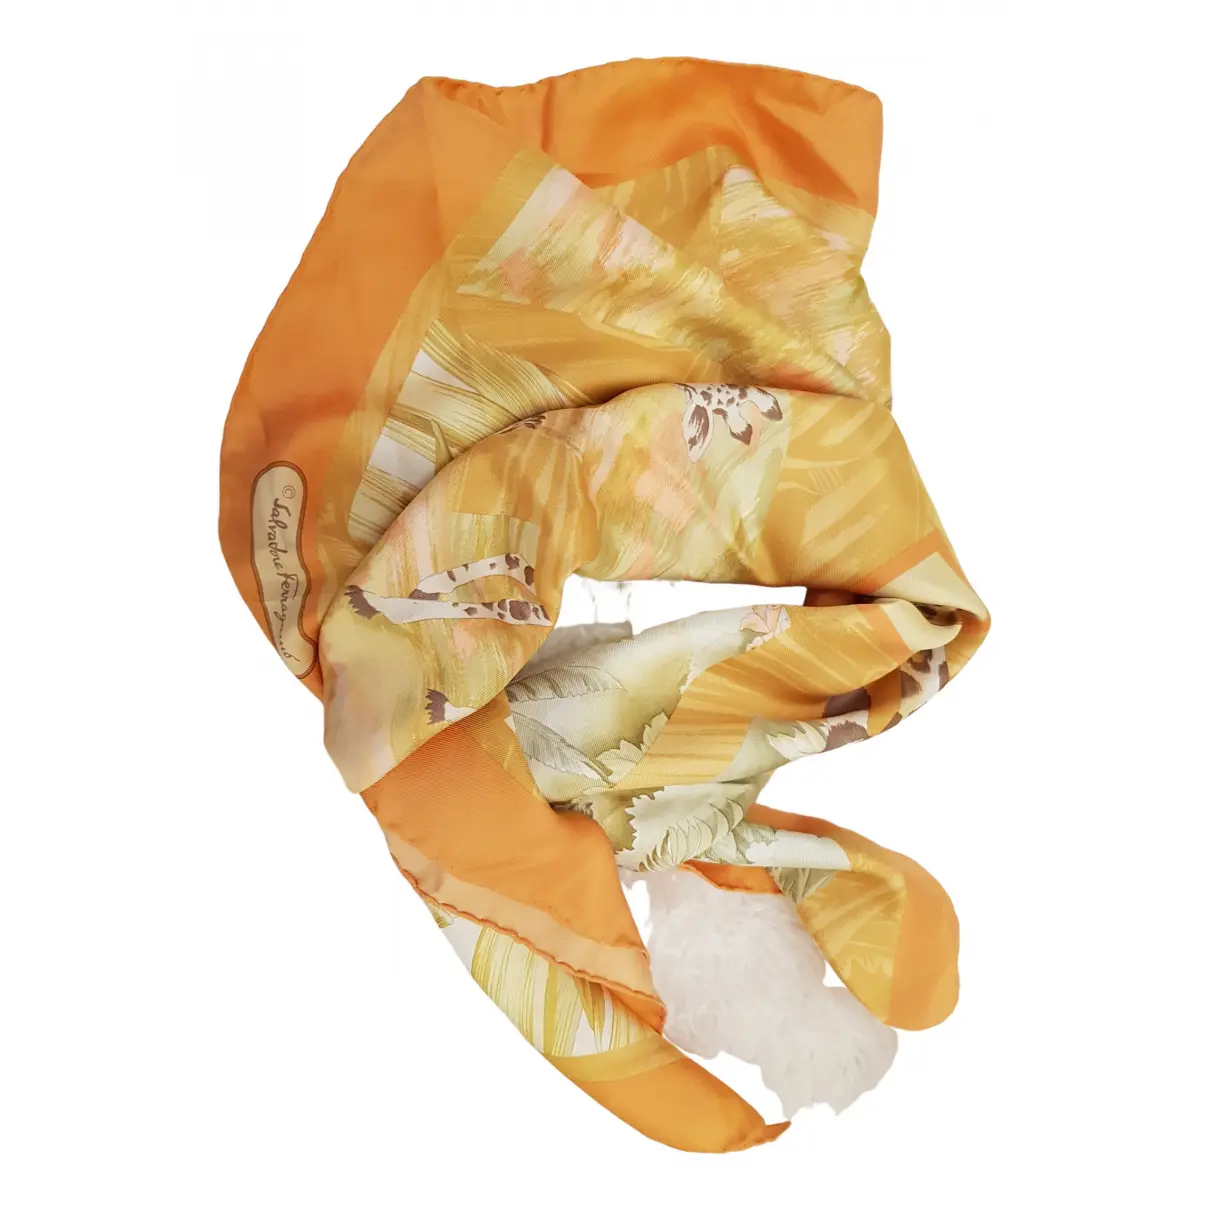 Silk scarf Salvatore Ferragamo